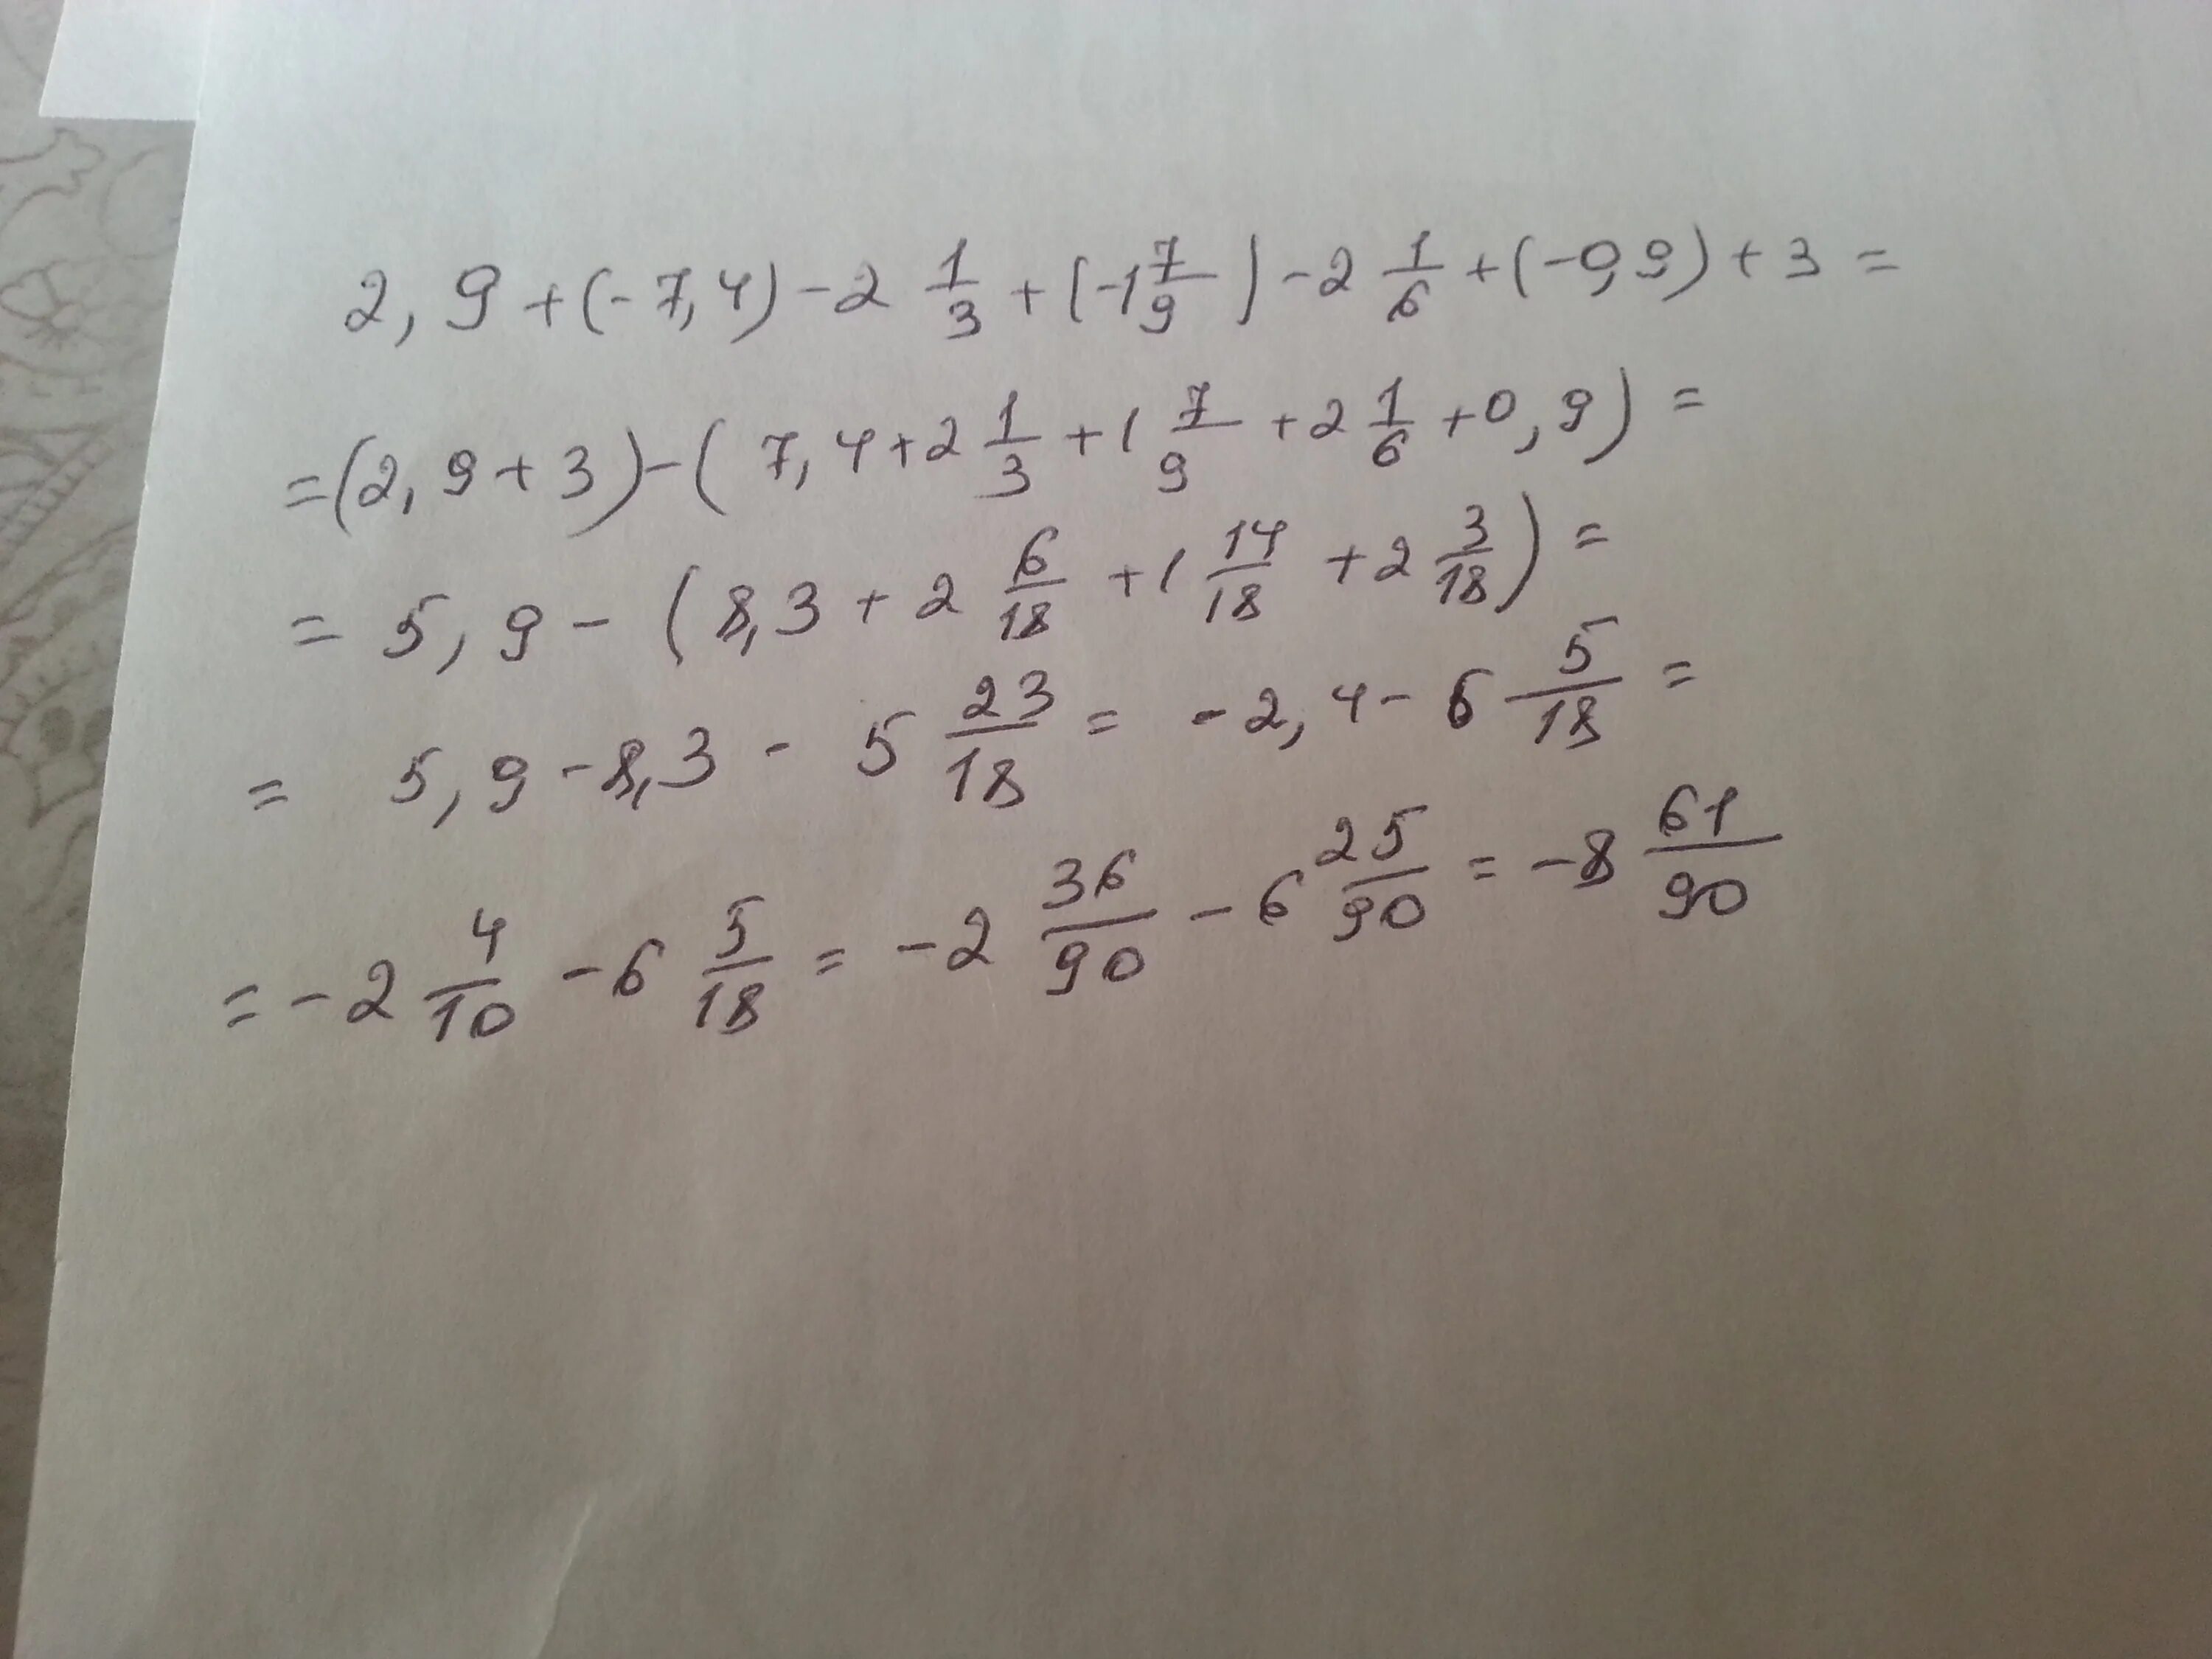 1.9 7.3. 2 2 9 4 3+1 3 Вычислите. Вычислите 4 4/9:4/9-1 1/2*3 1/3. Вычислить. (1/7)^-2. Вычислите 2/3+1/9.